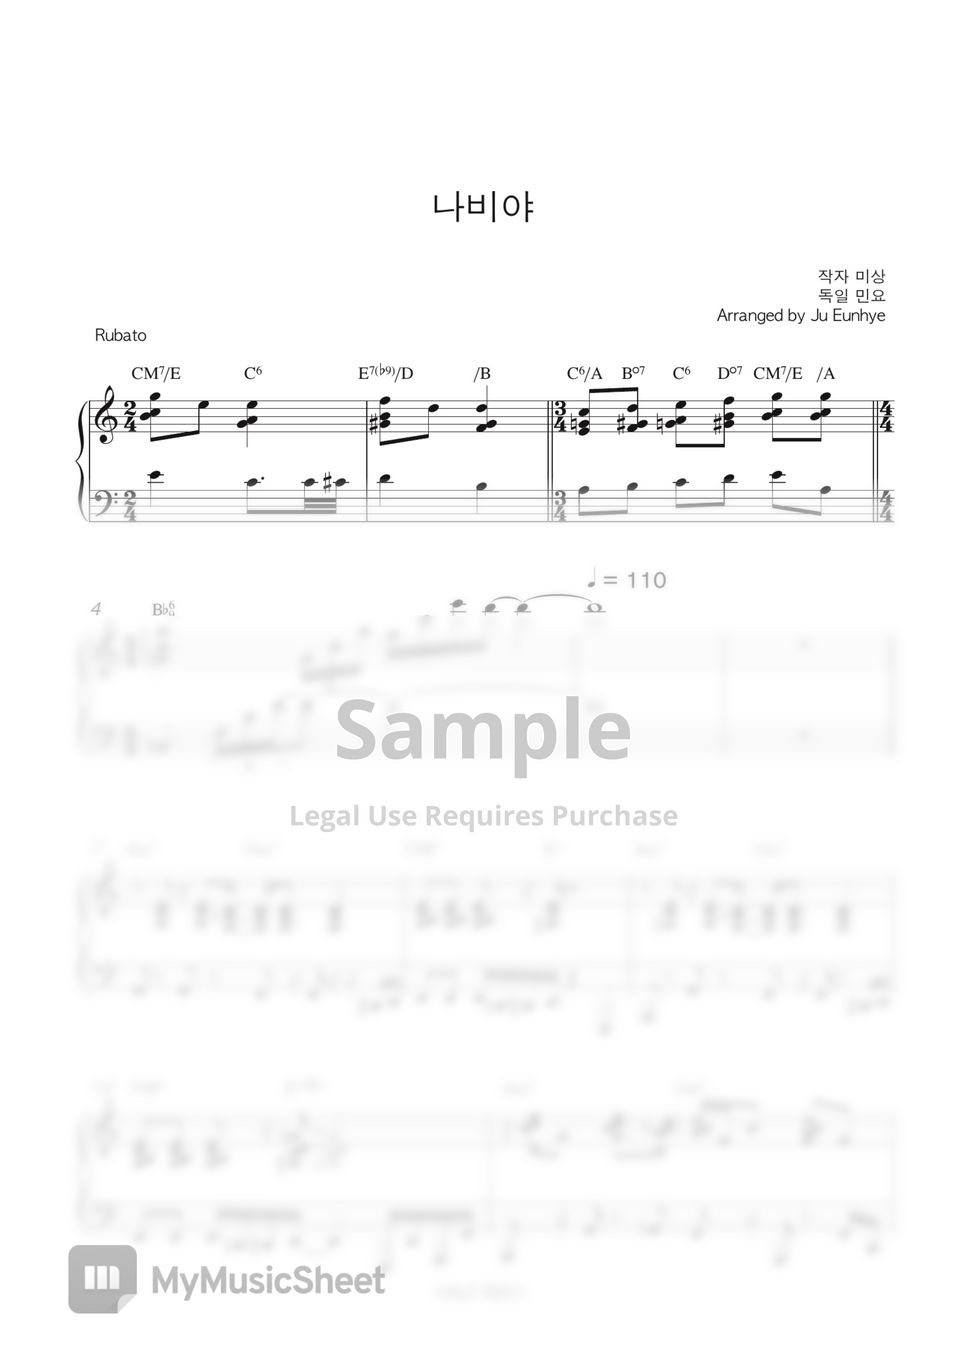 동요 - 나비야 (Hänschen klein) (힙한편곡/어려움) by Ju Eunhye